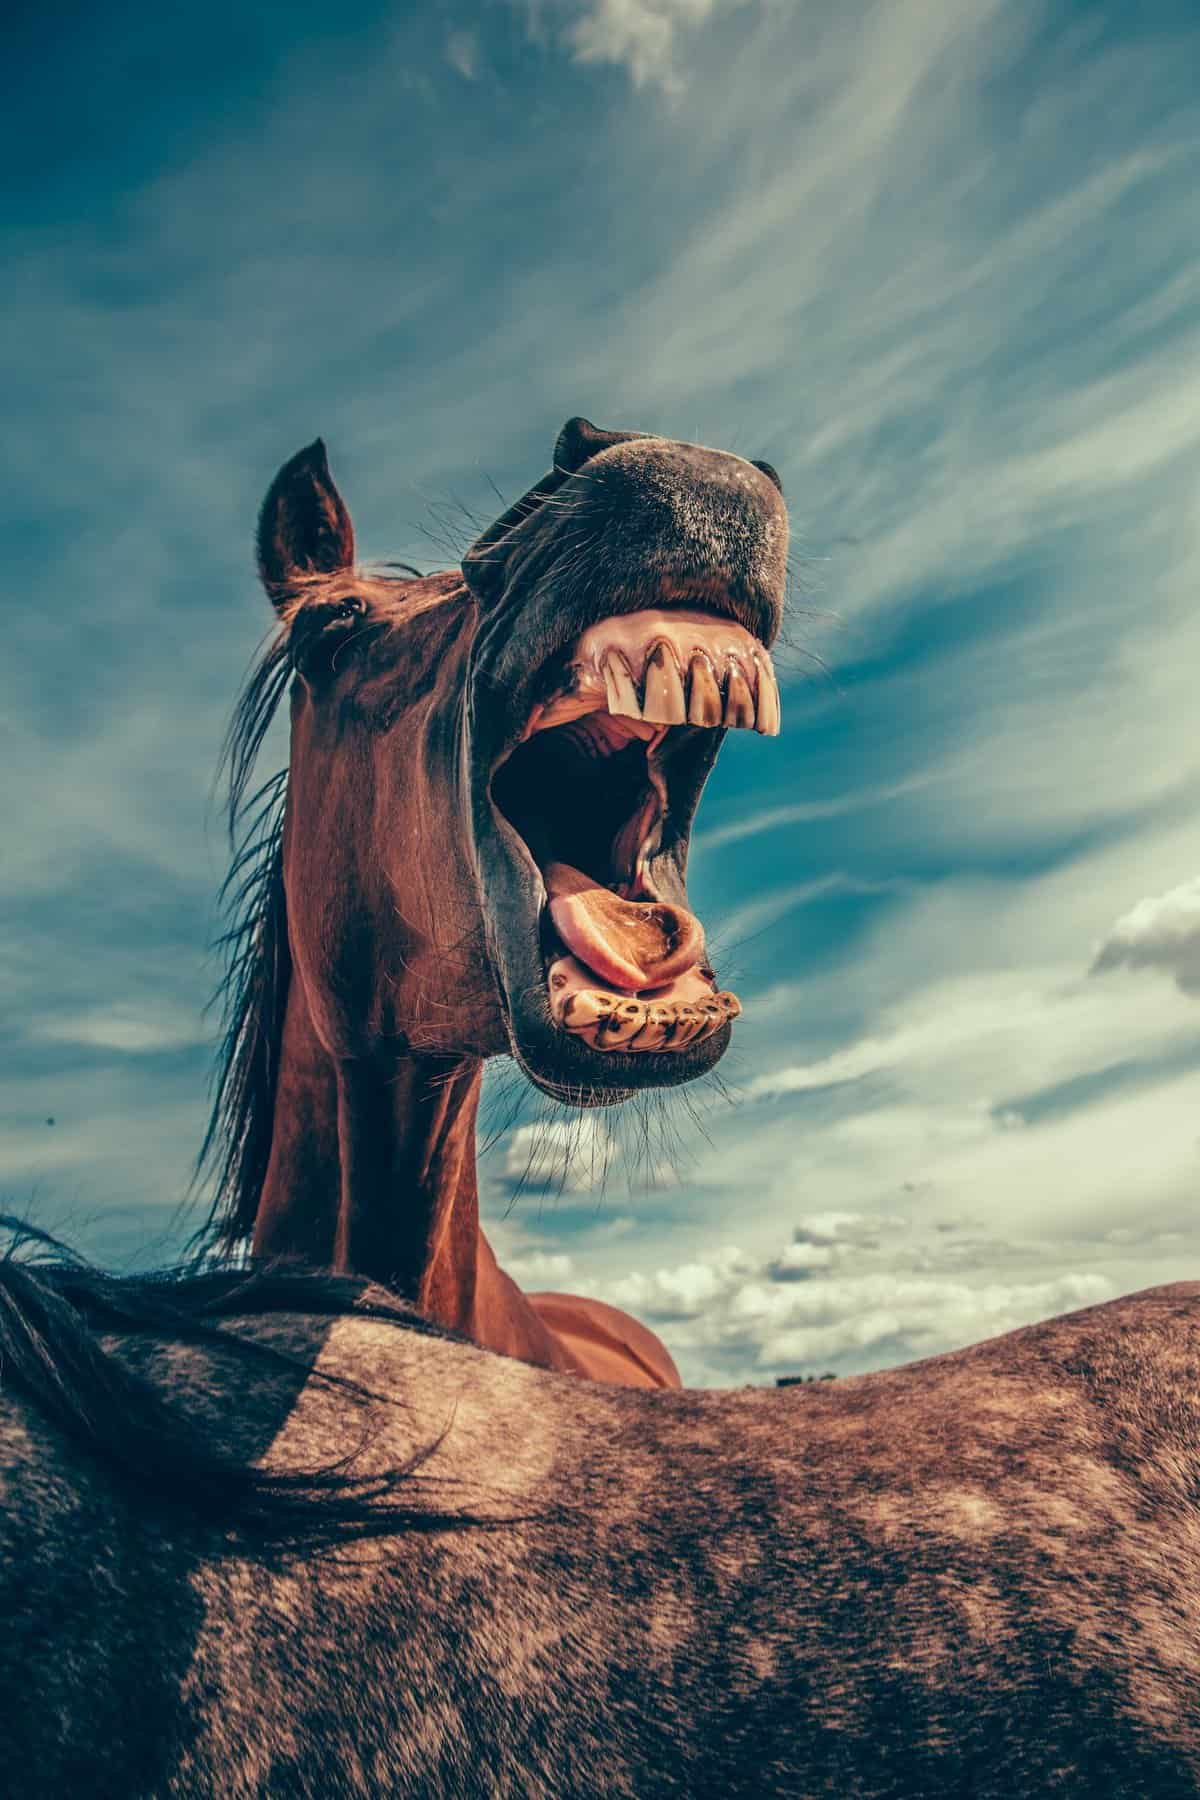 Horse Body Language – Mouth Opened